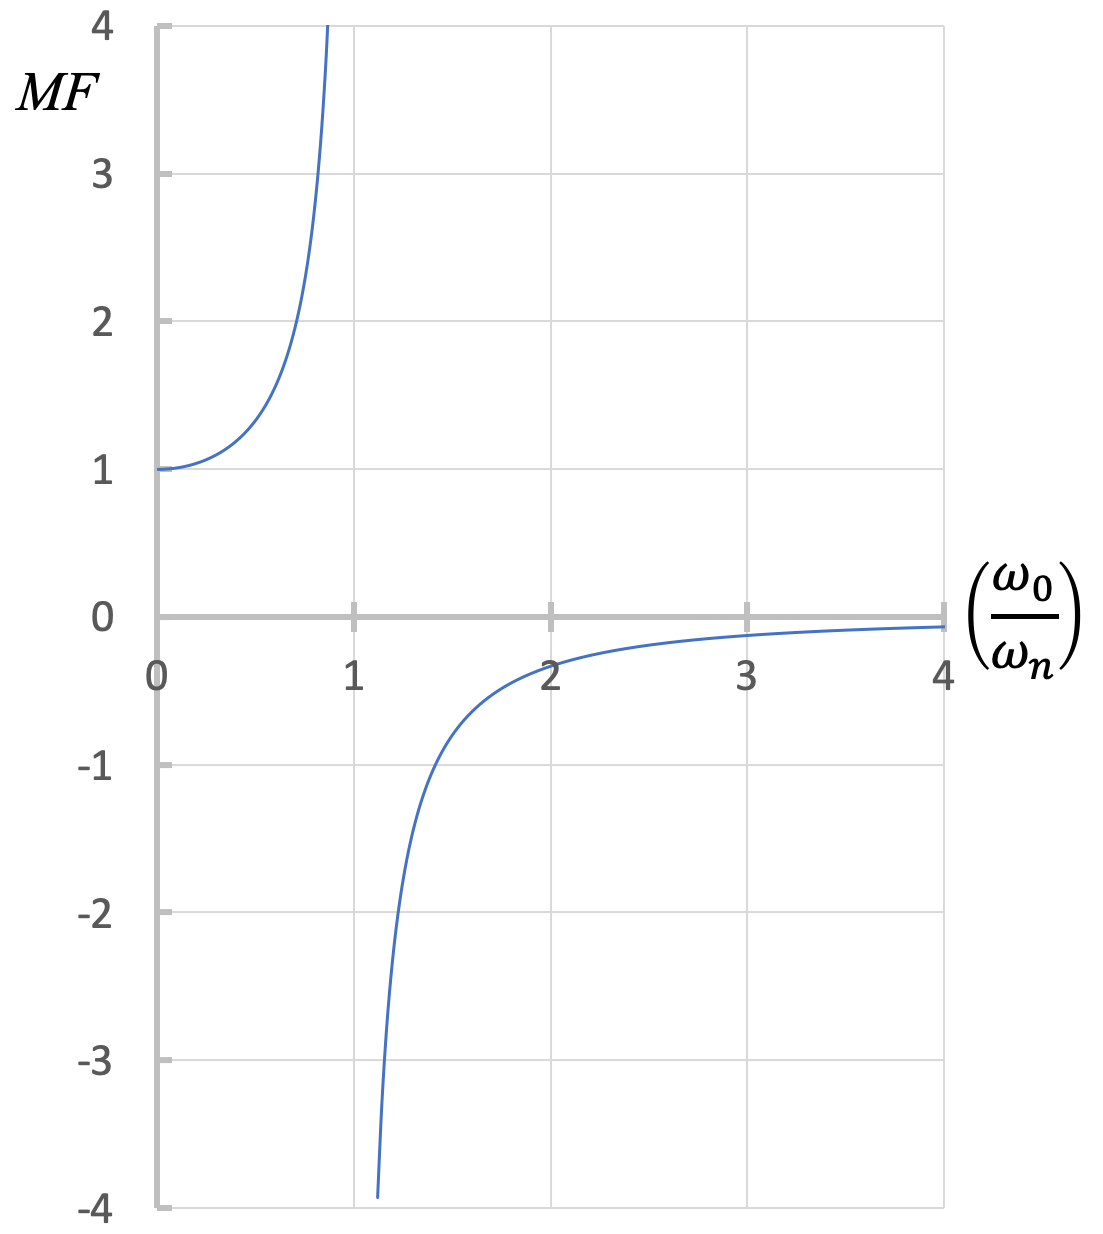 Gráfica del factor de aumento MF, en el eje vertical, vs la relación entre la velocidad angular inicial y la frecuencia natural angular del sistema en el eje horizontal. La gráfica comienza en MF = 1 cuando la relación es 0, y va al infinito a medida que se acerca a la relación = 1 desde la izquierda. MF se acerca al infinito negativo a medida que la gráfica se acerca a la relación = 1 desde la derecha MF se acerca a 0 a medida que la relación va al infinito positivo.